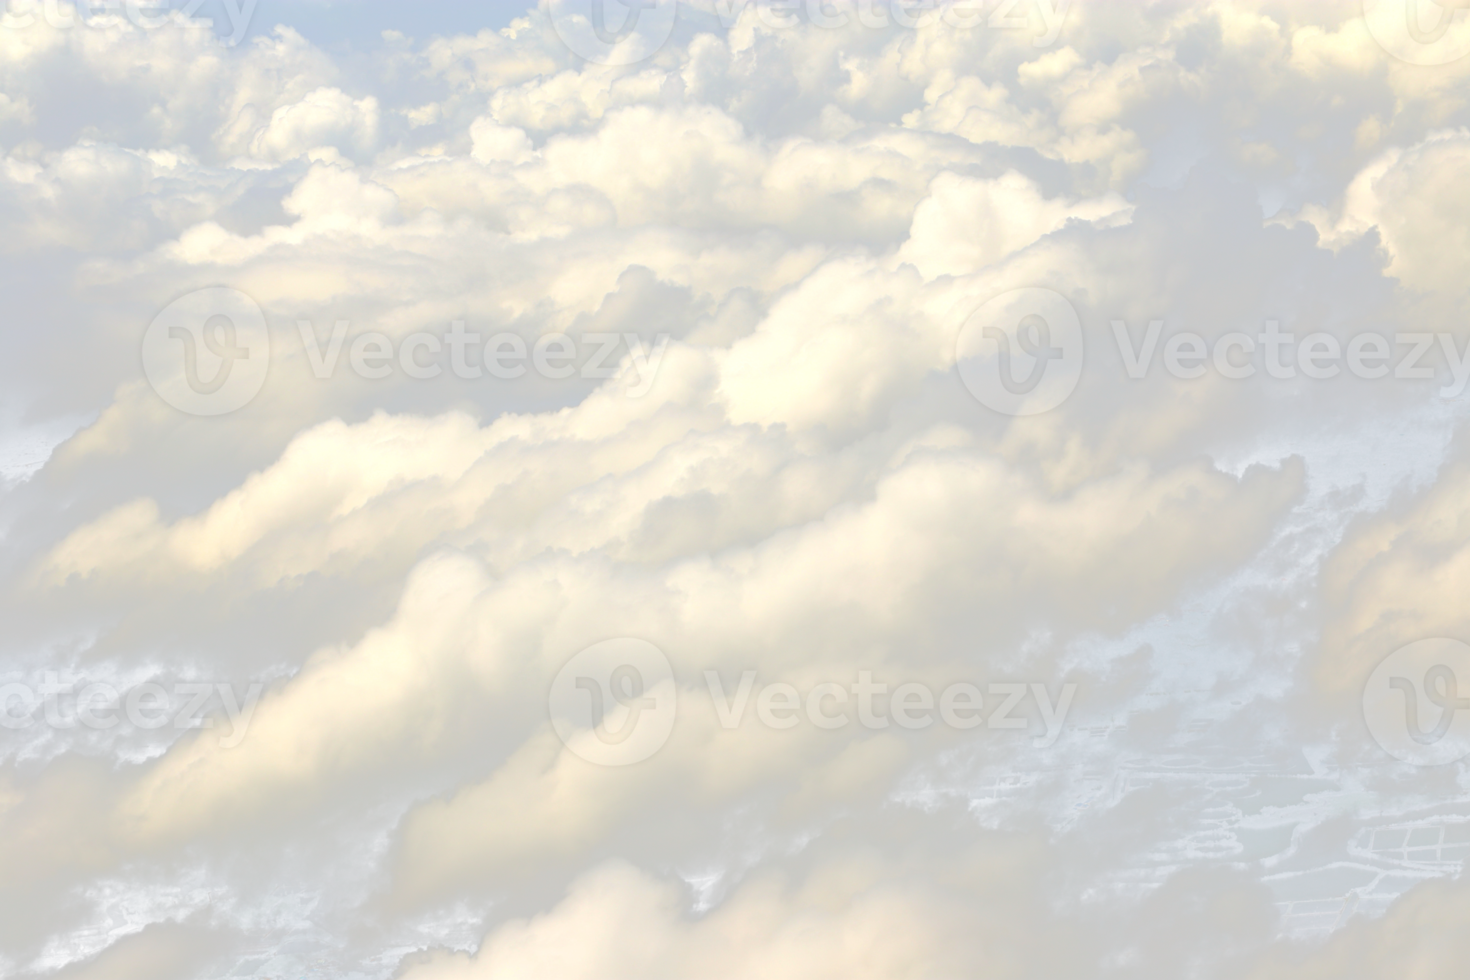 nuvem na atmosfera do céu do avião, fora das janelas é céu cumulus cloudscape e céu sob o sol. vista de cima da nuvem é linda com clima de clima de fundo abstrato em alto nível png